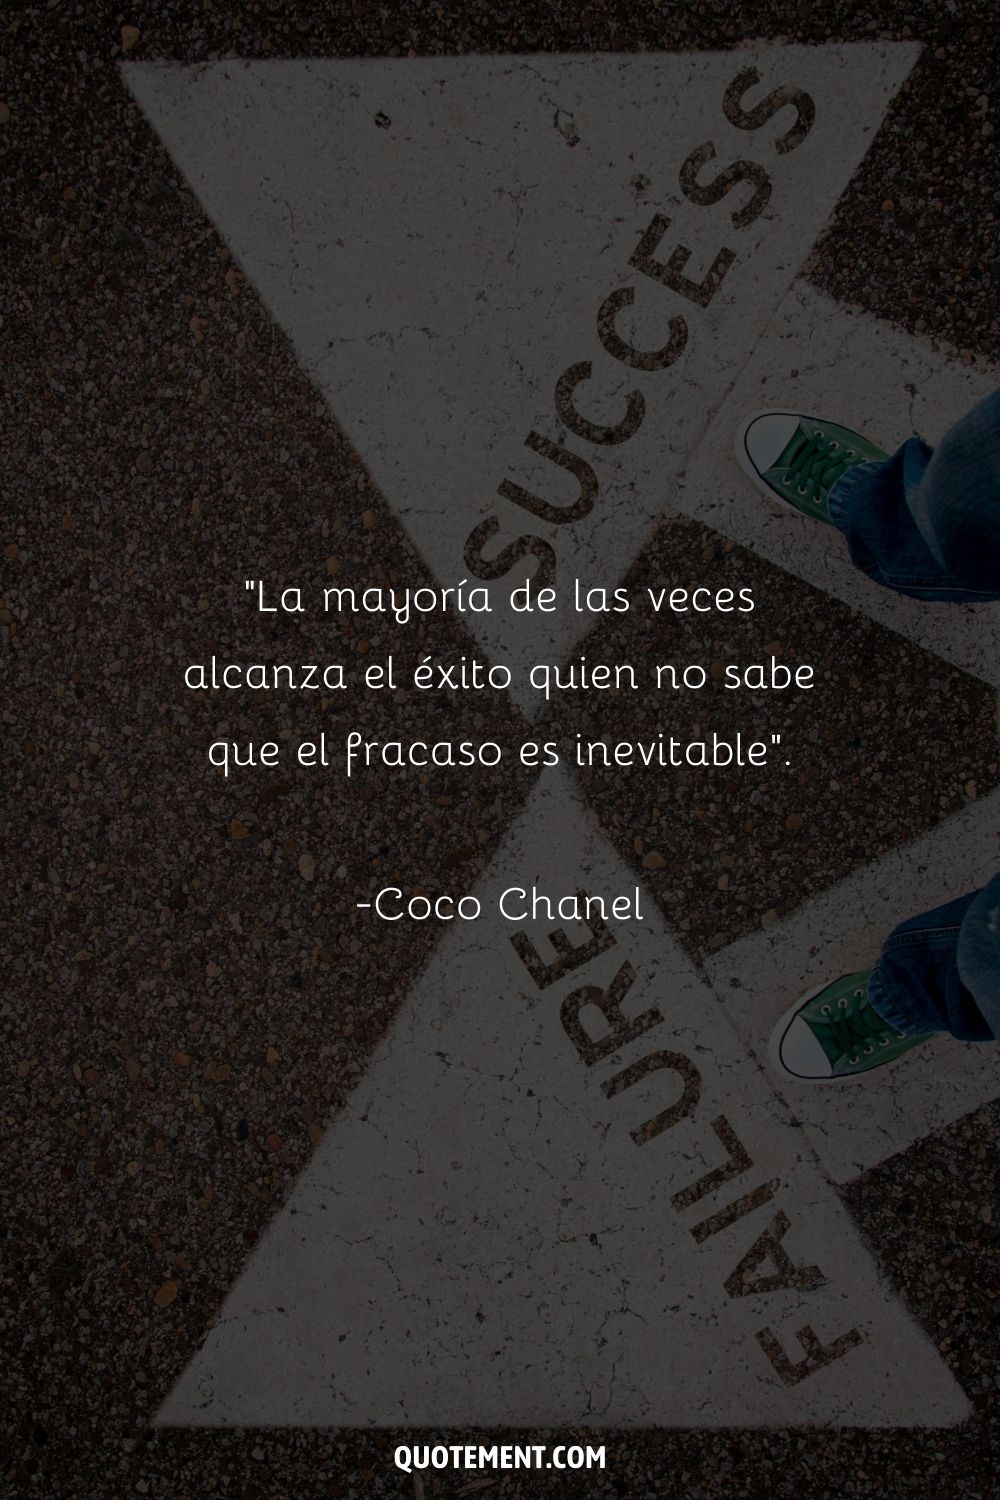 "La mayoría de las veces alcanza el éxito quien no sabe que el fracaso es inevitable". - Coco Chanel, Creer en nosotras mismas La sabiduría de las mujeres